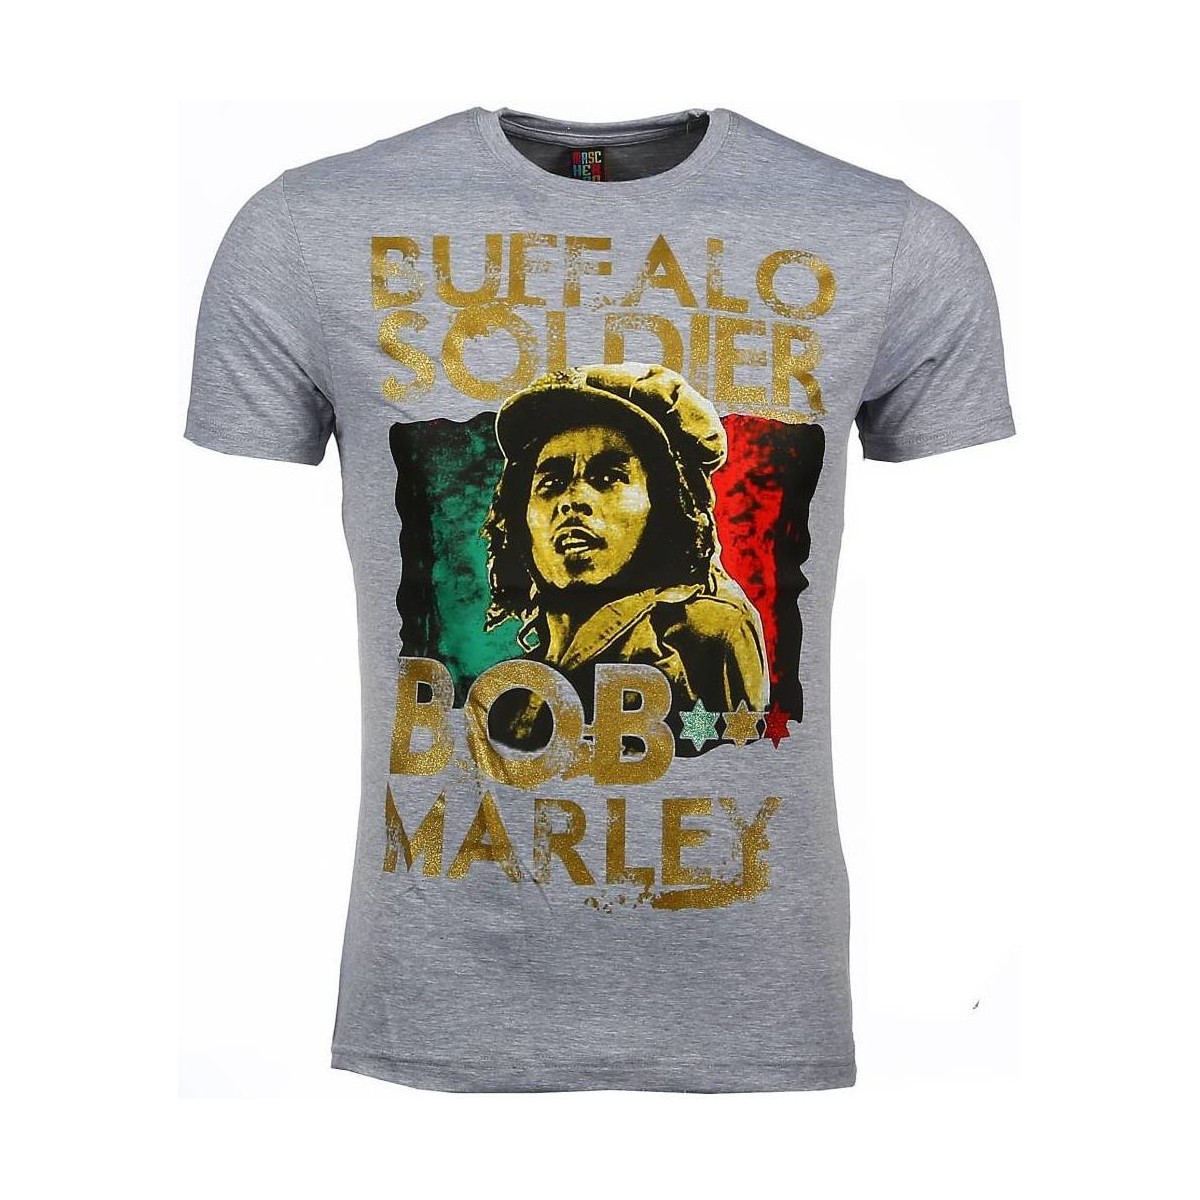 textil Herr T-shirts Local Fanatic Bob Marley Buffalo Soldier Grå